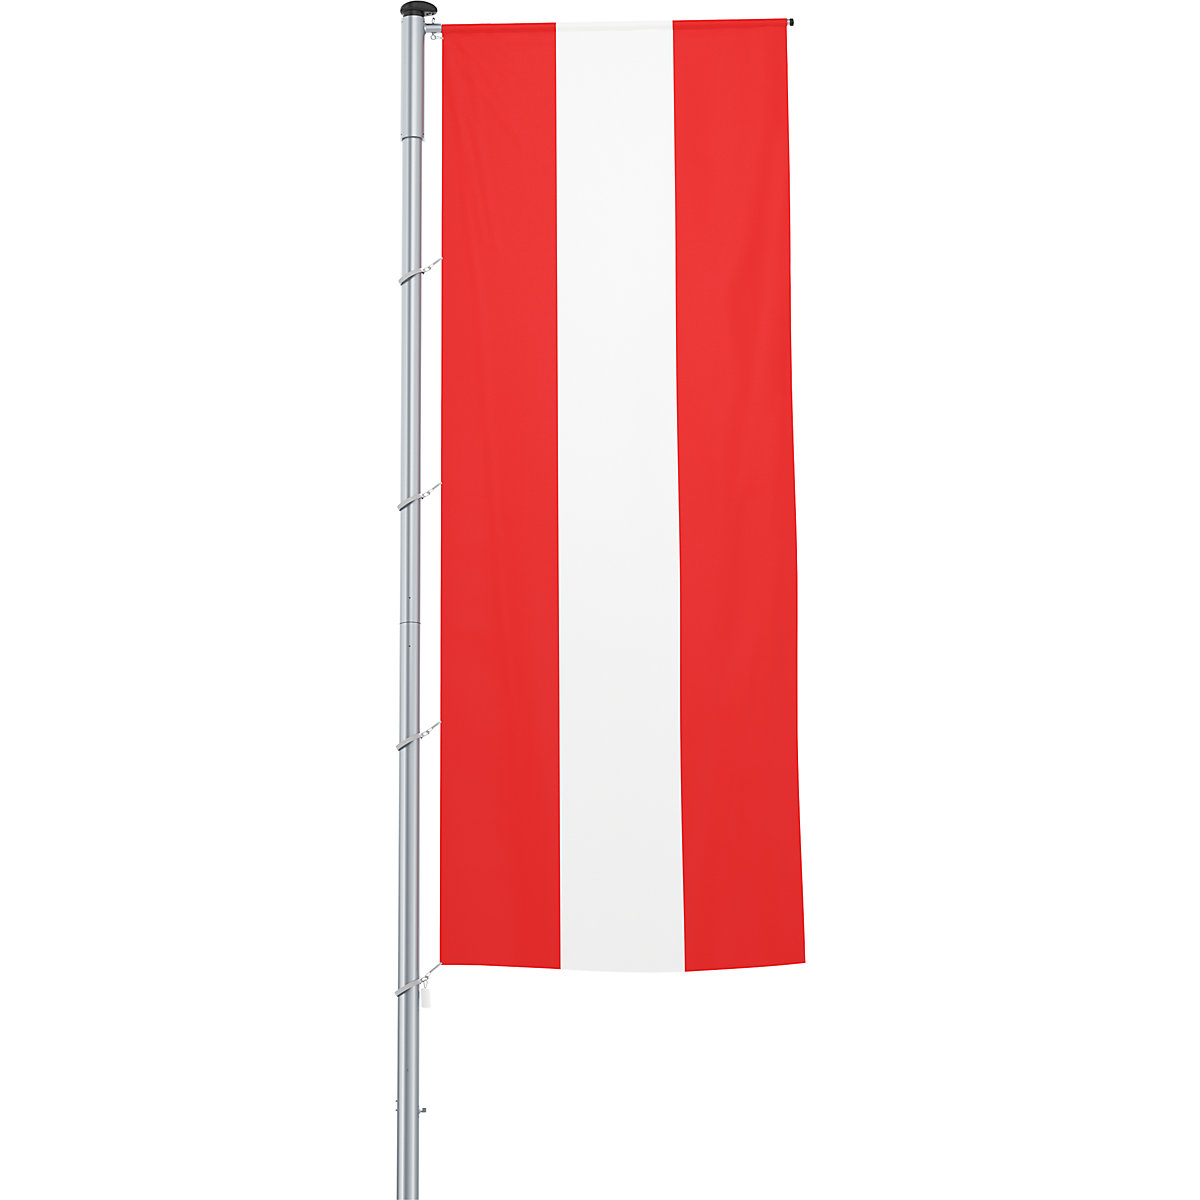 Mannus – Bandera con pluma/bandera del país, formato 1,2 x 3 m, Austria